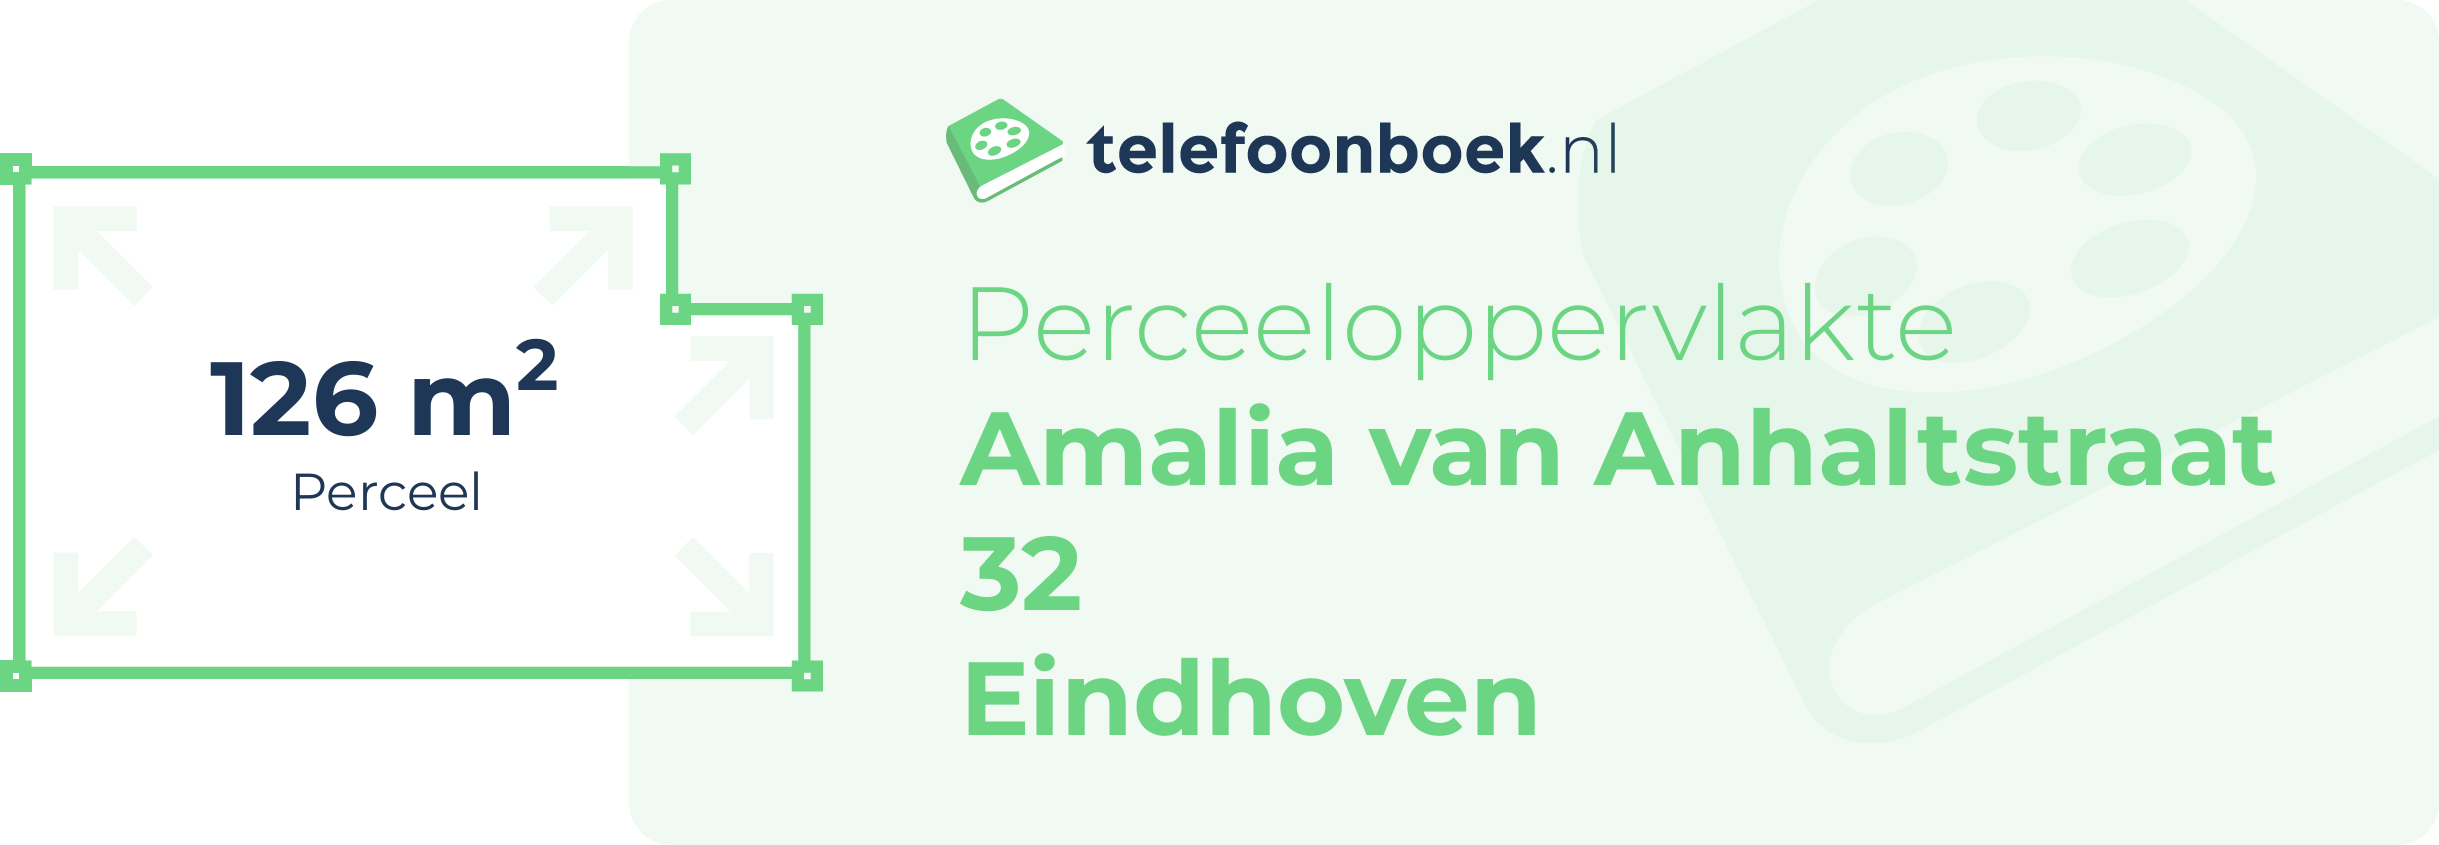 Perceeloppervlakte Amalia Van Anhaltstraat 32 Eindhoven